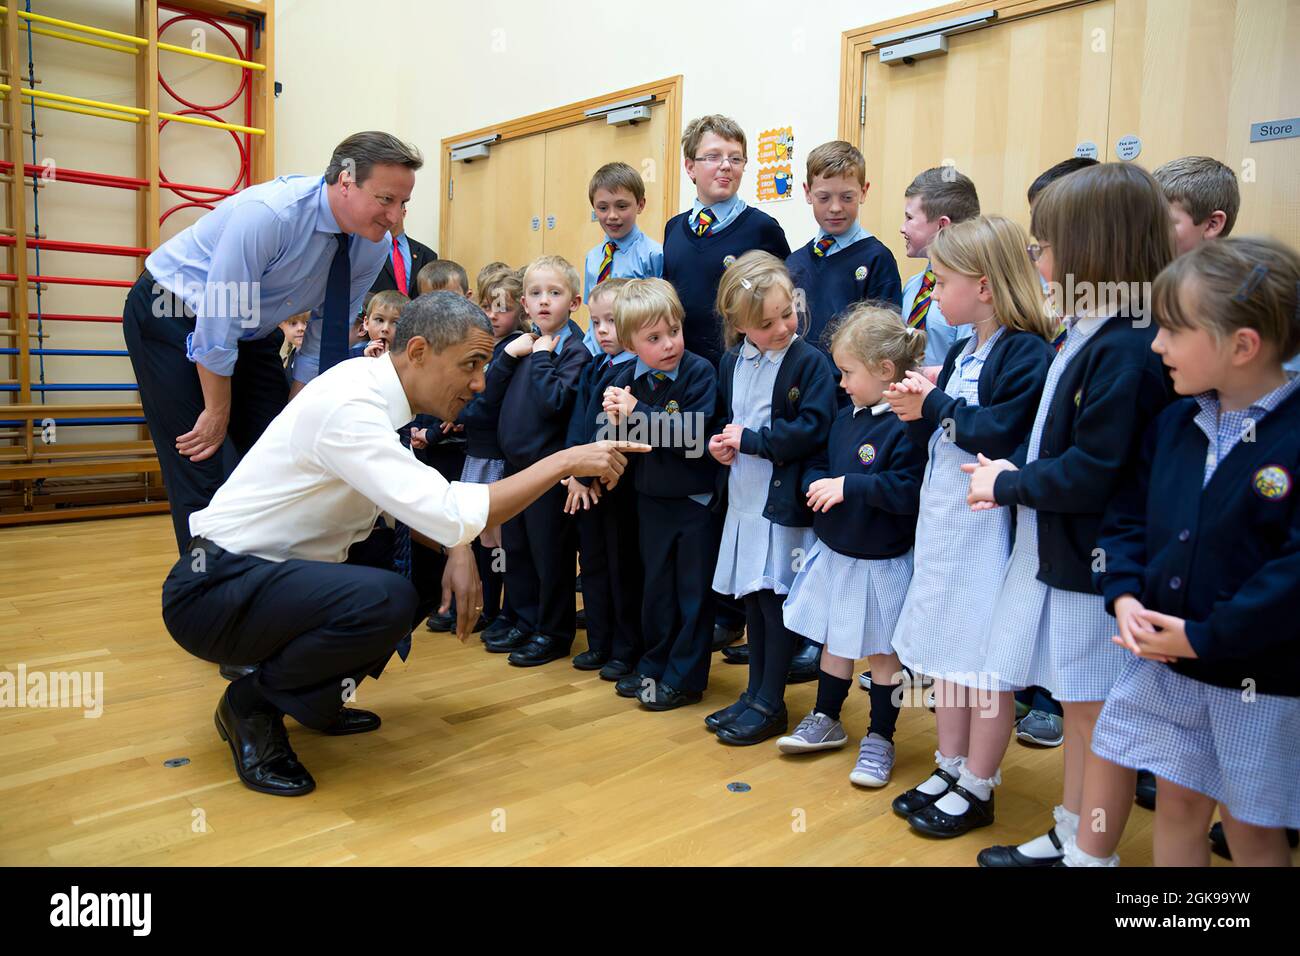 17 juin 2013'visite du Président et Premier ministre britannique David Cameron avec des écoliers à l'école primaire d'Enniskillen, à Enniskillen, en Irlande du Nord, pendant une pause du Sommet du G-8.' (Photo officielle de la Maison Blanche par Pete Souza) cette photo officielle de la Maison Blanche est disponible uniquement pour publication par les organismes de presse et/ou pour impression personnelle par le(s) sujet(s) de la photo. La photographie ne peut être manipulée d'aucune manière et ne peut pas être utilisée dans des documents commerciaux ou politiques, des publicités, des courriels, des produits, des promotions qui, de quelque manière que ce soit, suggèrent une approbation Banque D'Images